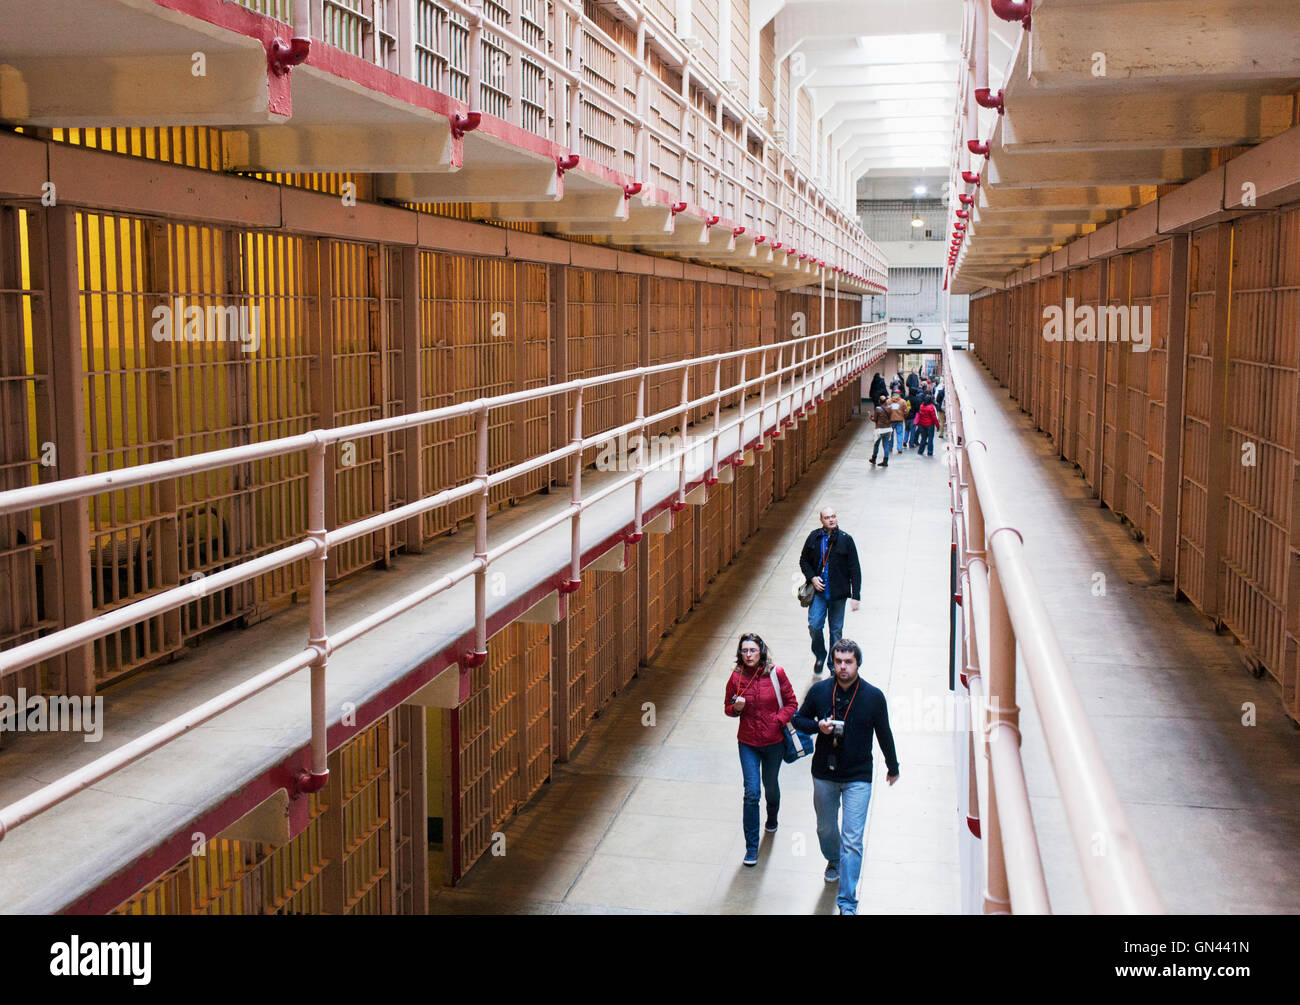 Gefängnis-Zellen, Alcatraz Island, The Rock, San Francisco, California, Vereinigte Staaten von Amerika.  Alcatraz Island befindet sich in der Stockfoto